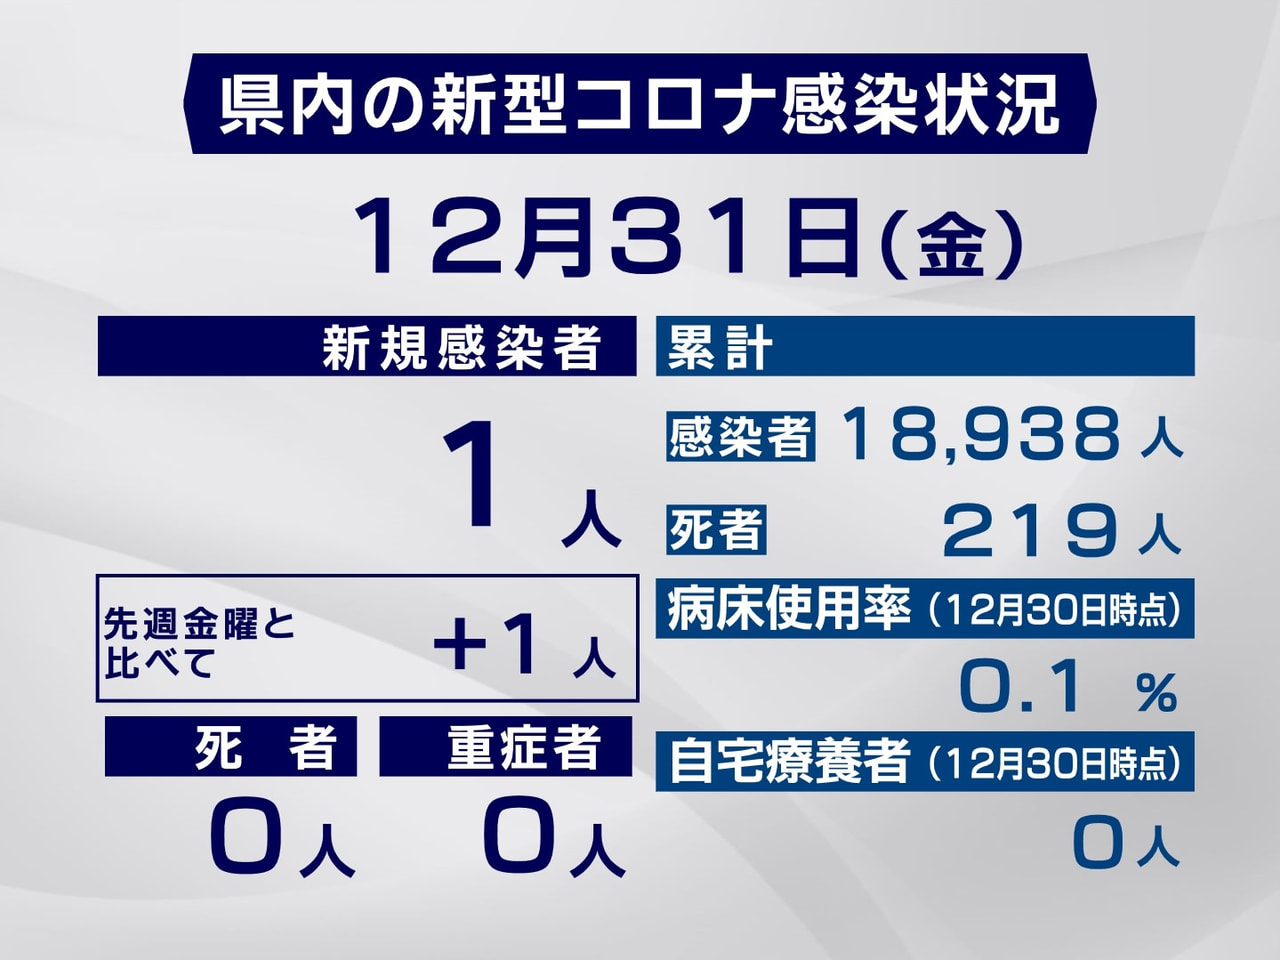 岐阜県は、３１日、新たに１人の新型コロナウイルスの感染を確認したと発表しました。...